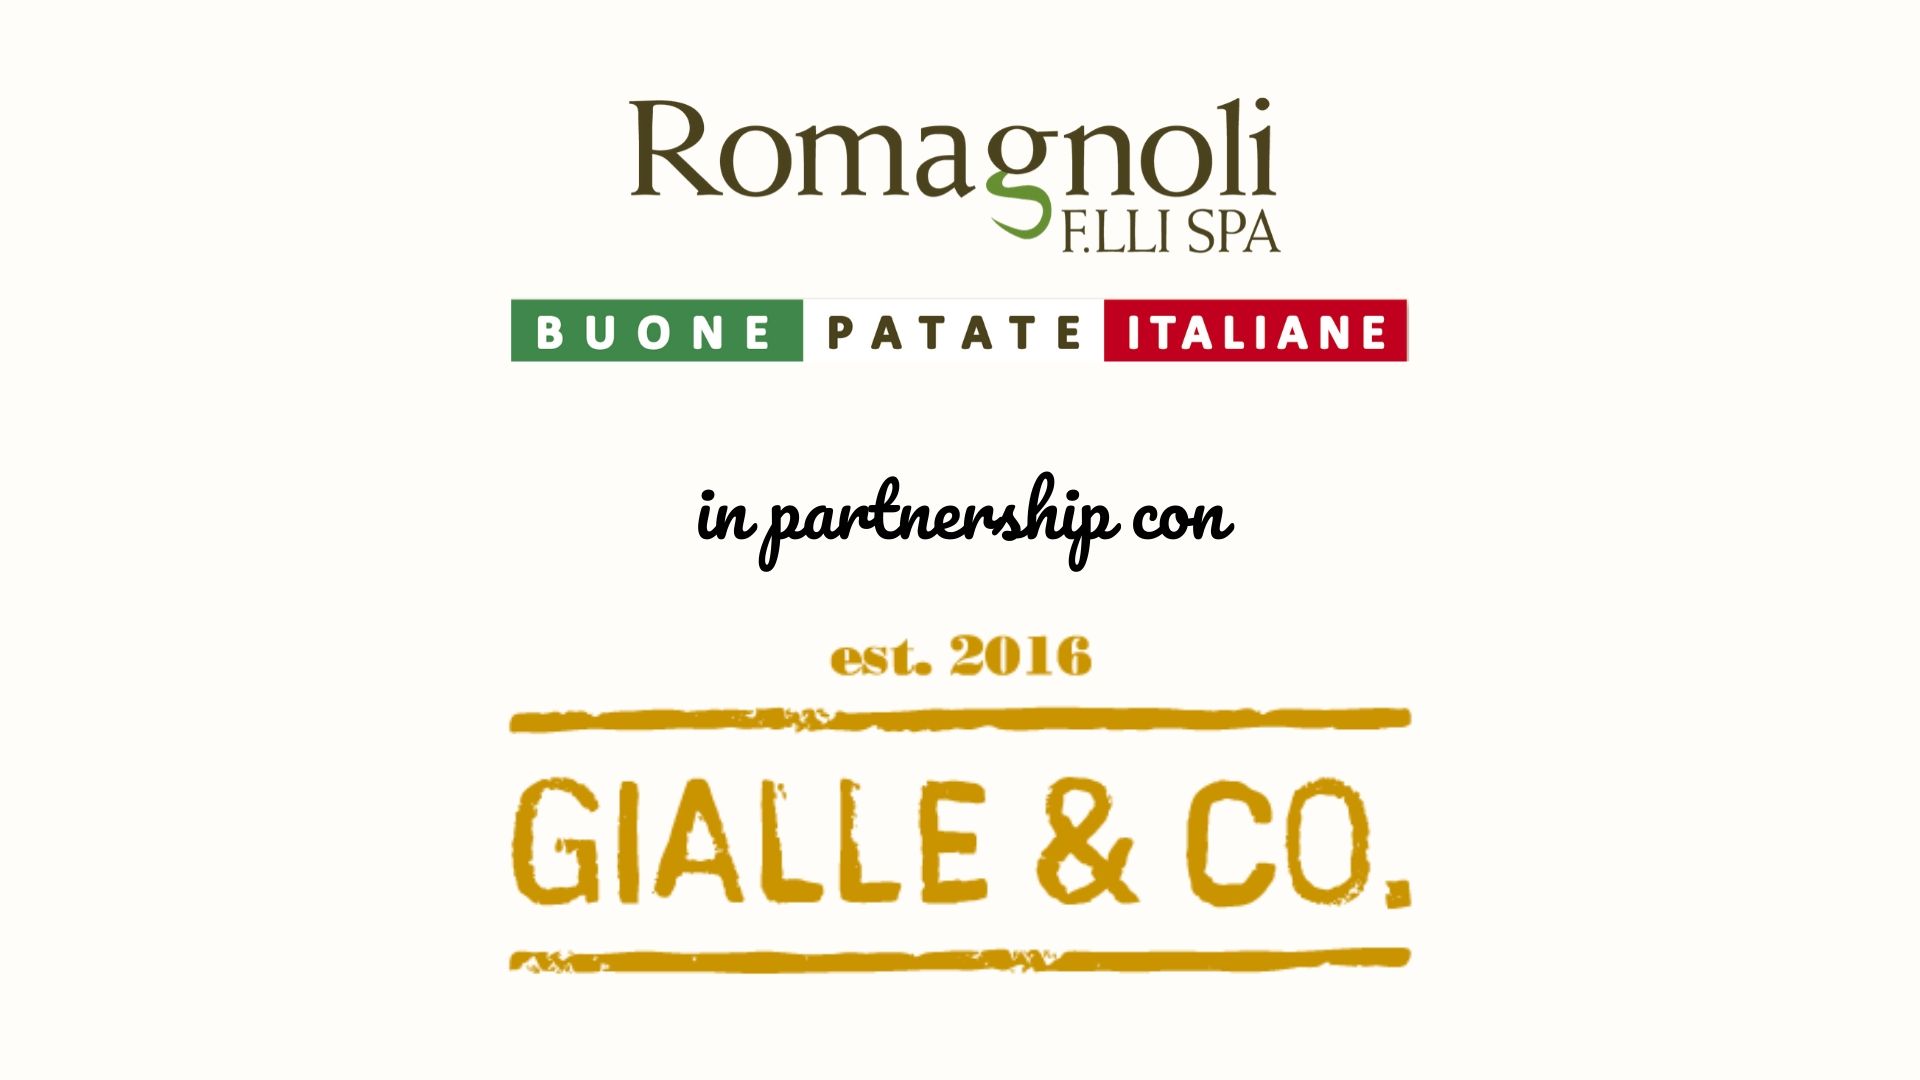 Romagnoli F.lli e Gialle & Co.: una partnership all’insegna del gusto